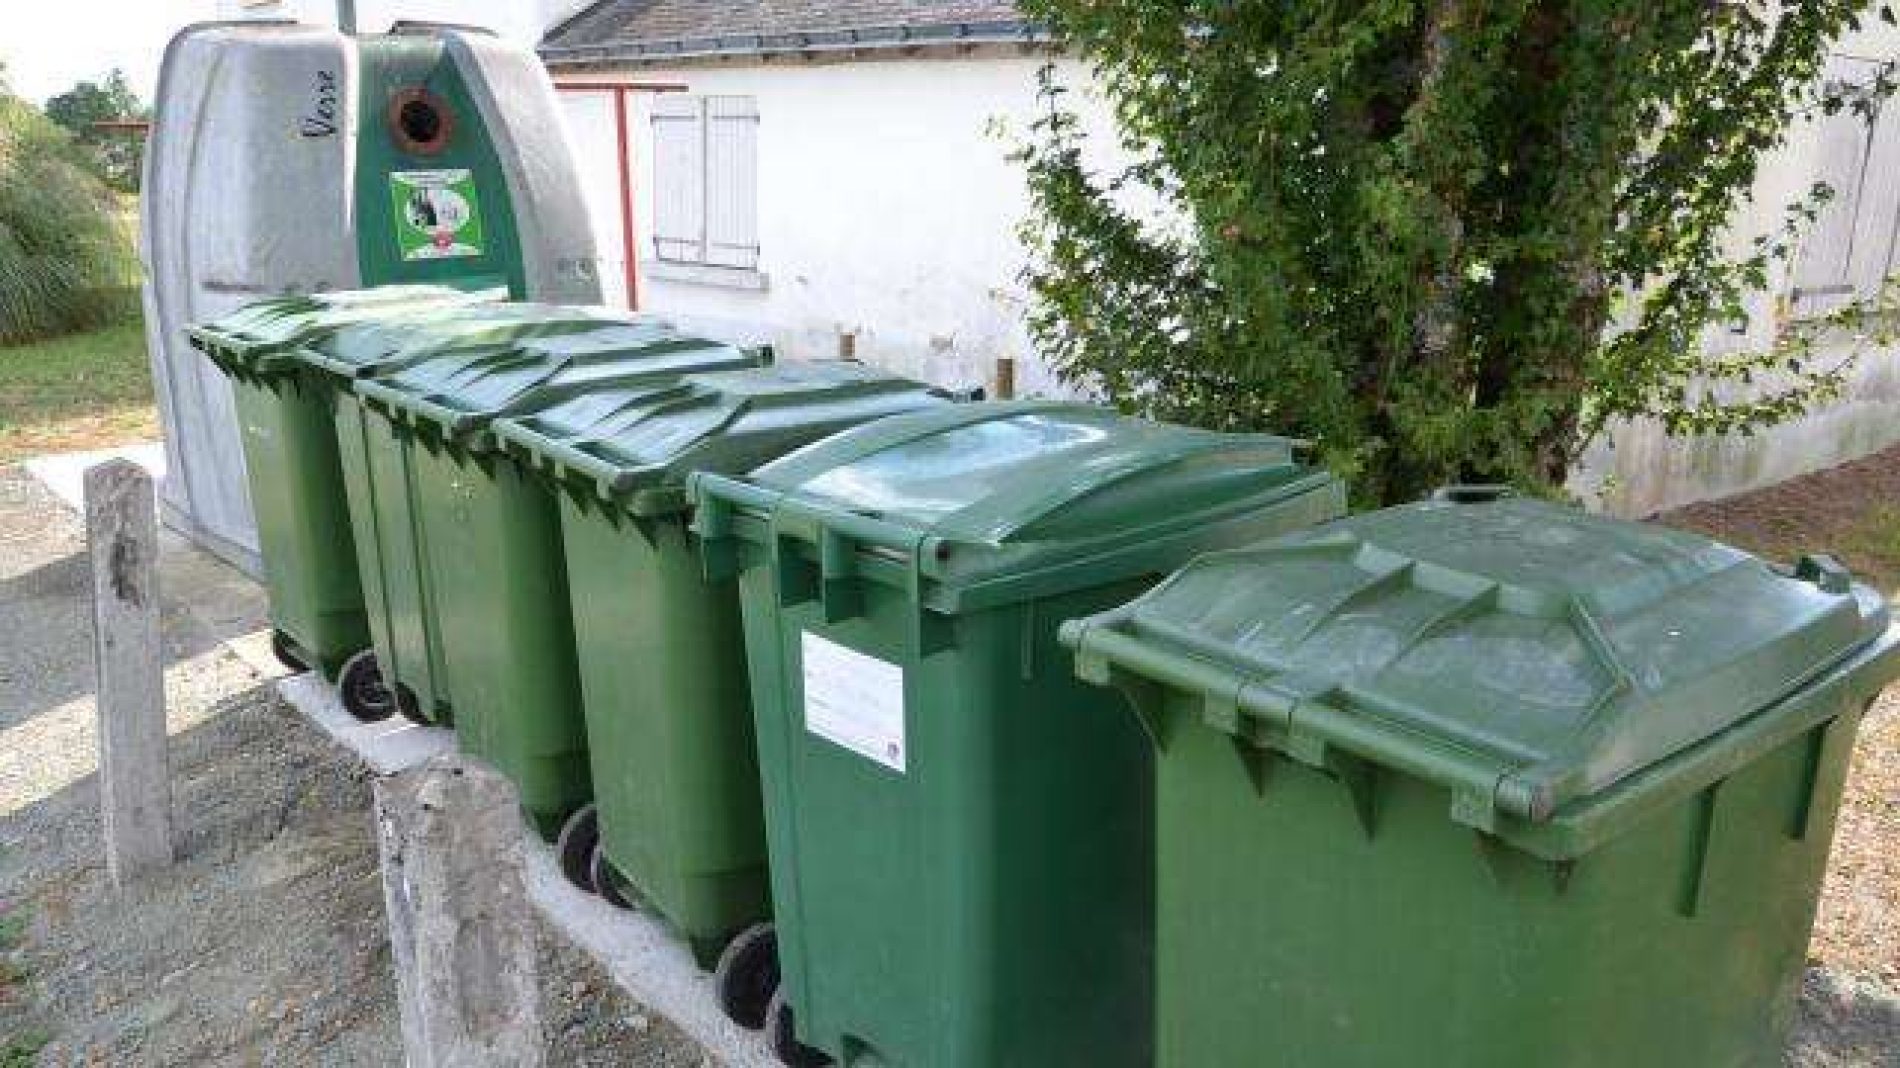 France -Marne : Des puces électroniques dans les poubelles de 153 communes